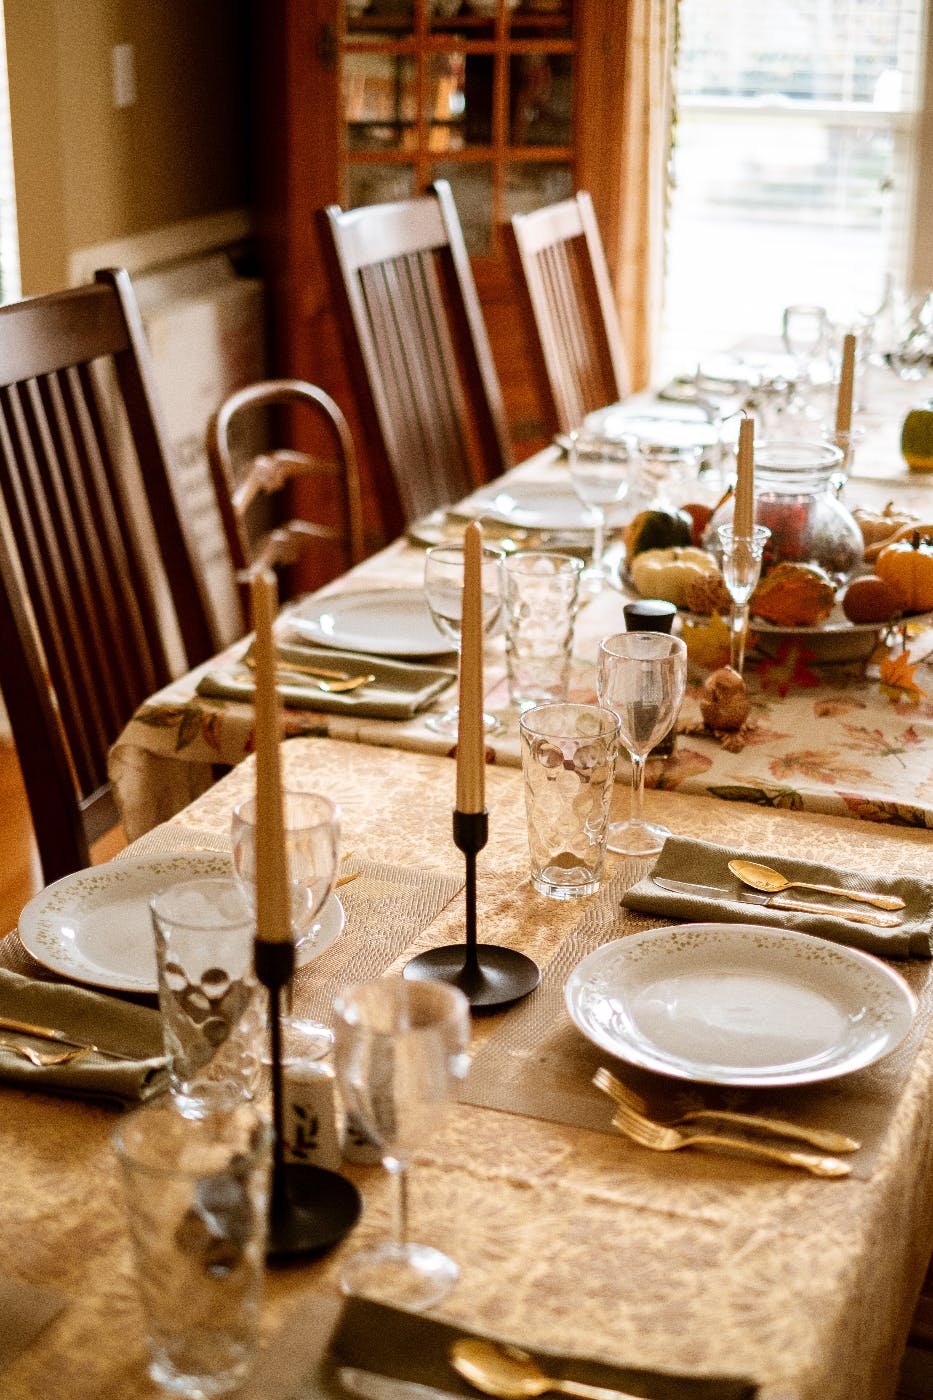 A lovely Thanksgiving dinner table